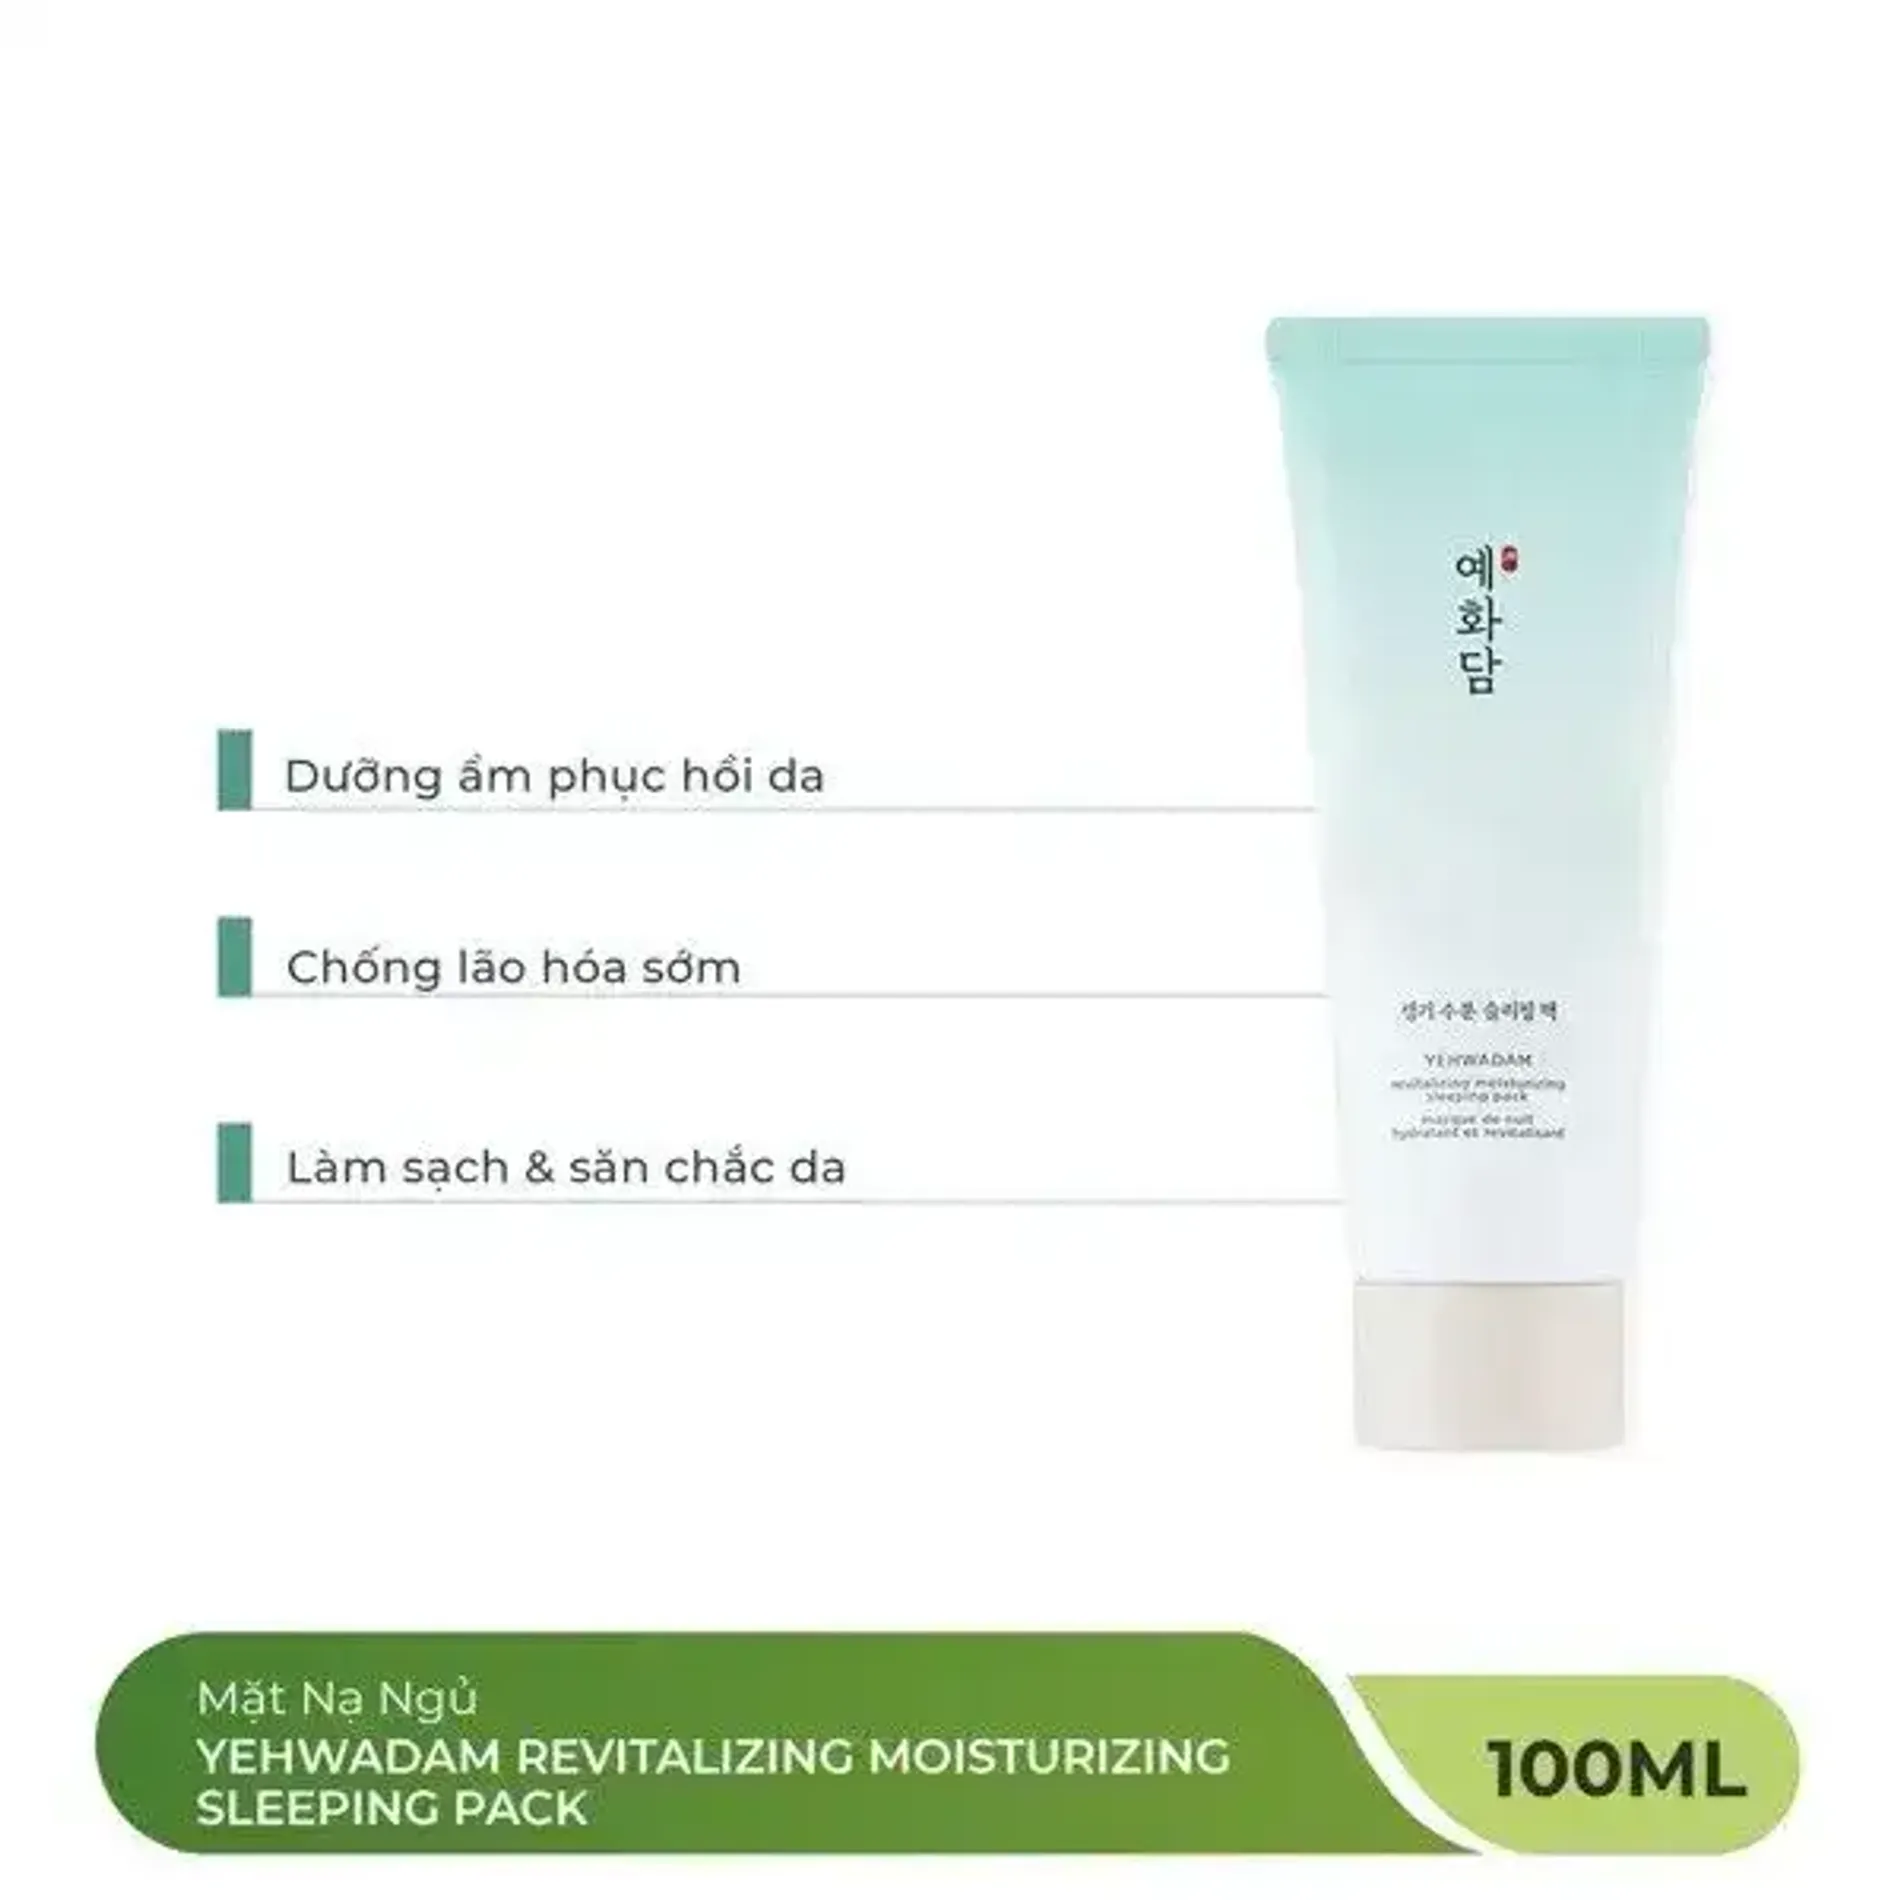 mat-na-ngu-thefaceshop-yehwadam-revitalizing-moisturizing-sleeping-pack-100ml-2